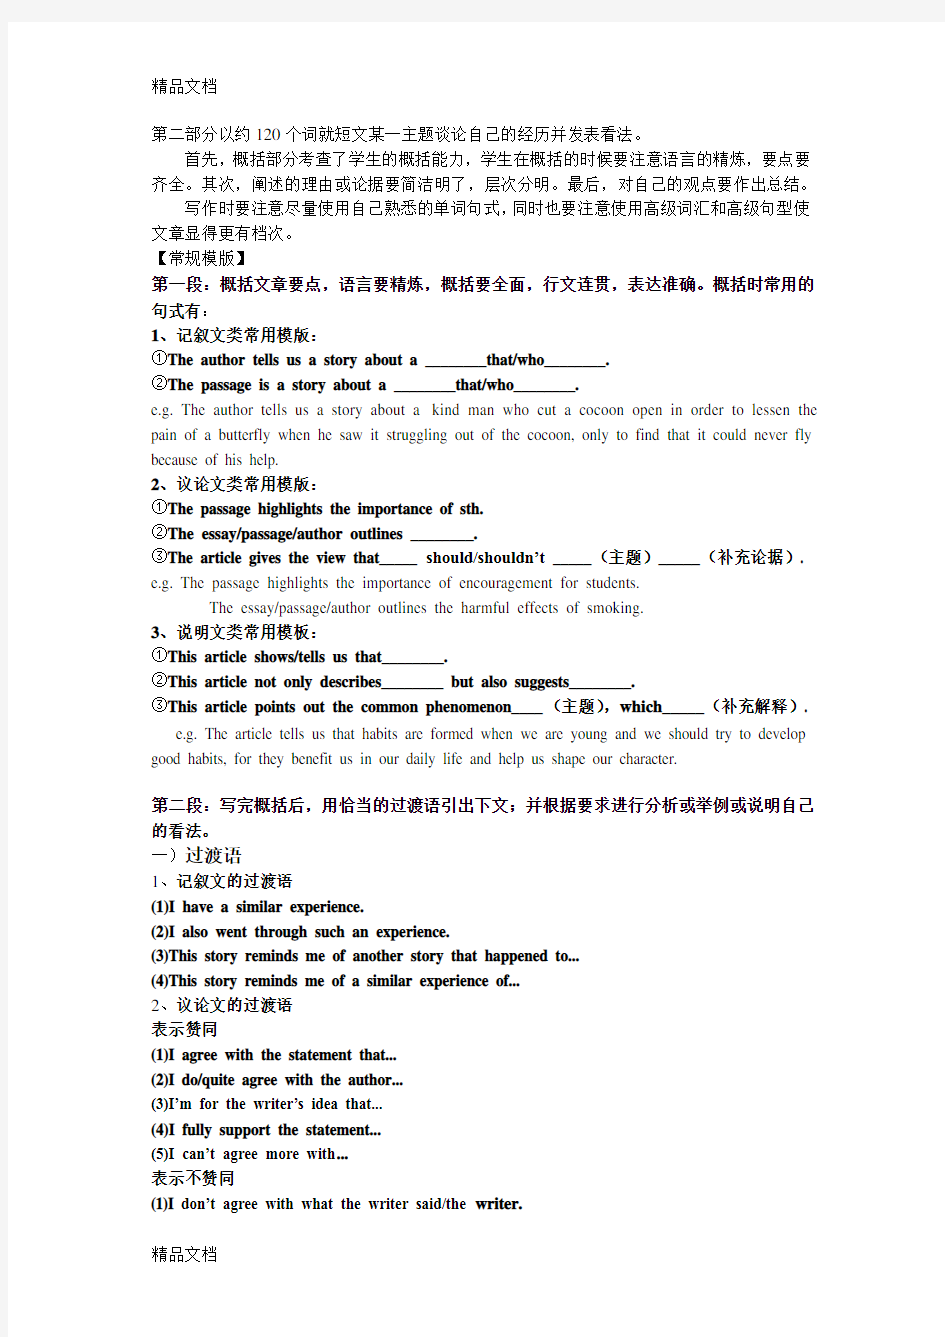 最新江苏高考英语作文常考题型模板